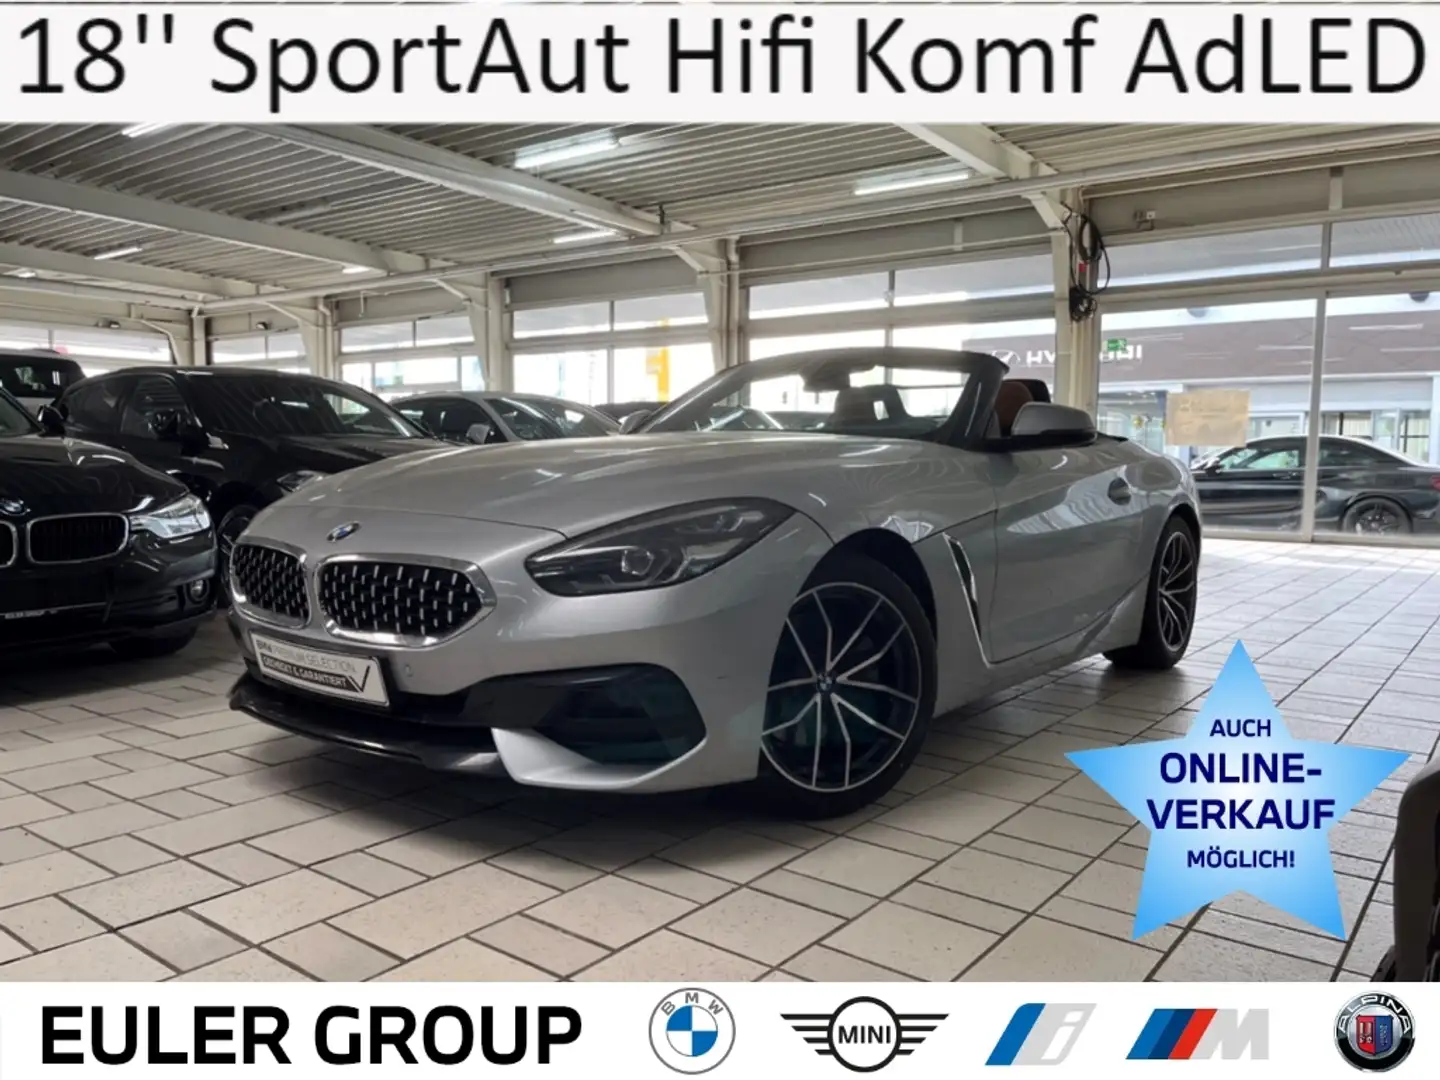 BMW Z4 20i Sport Line 18'' SportAut Hifi Leder Komf AdLED Ezüst - 1